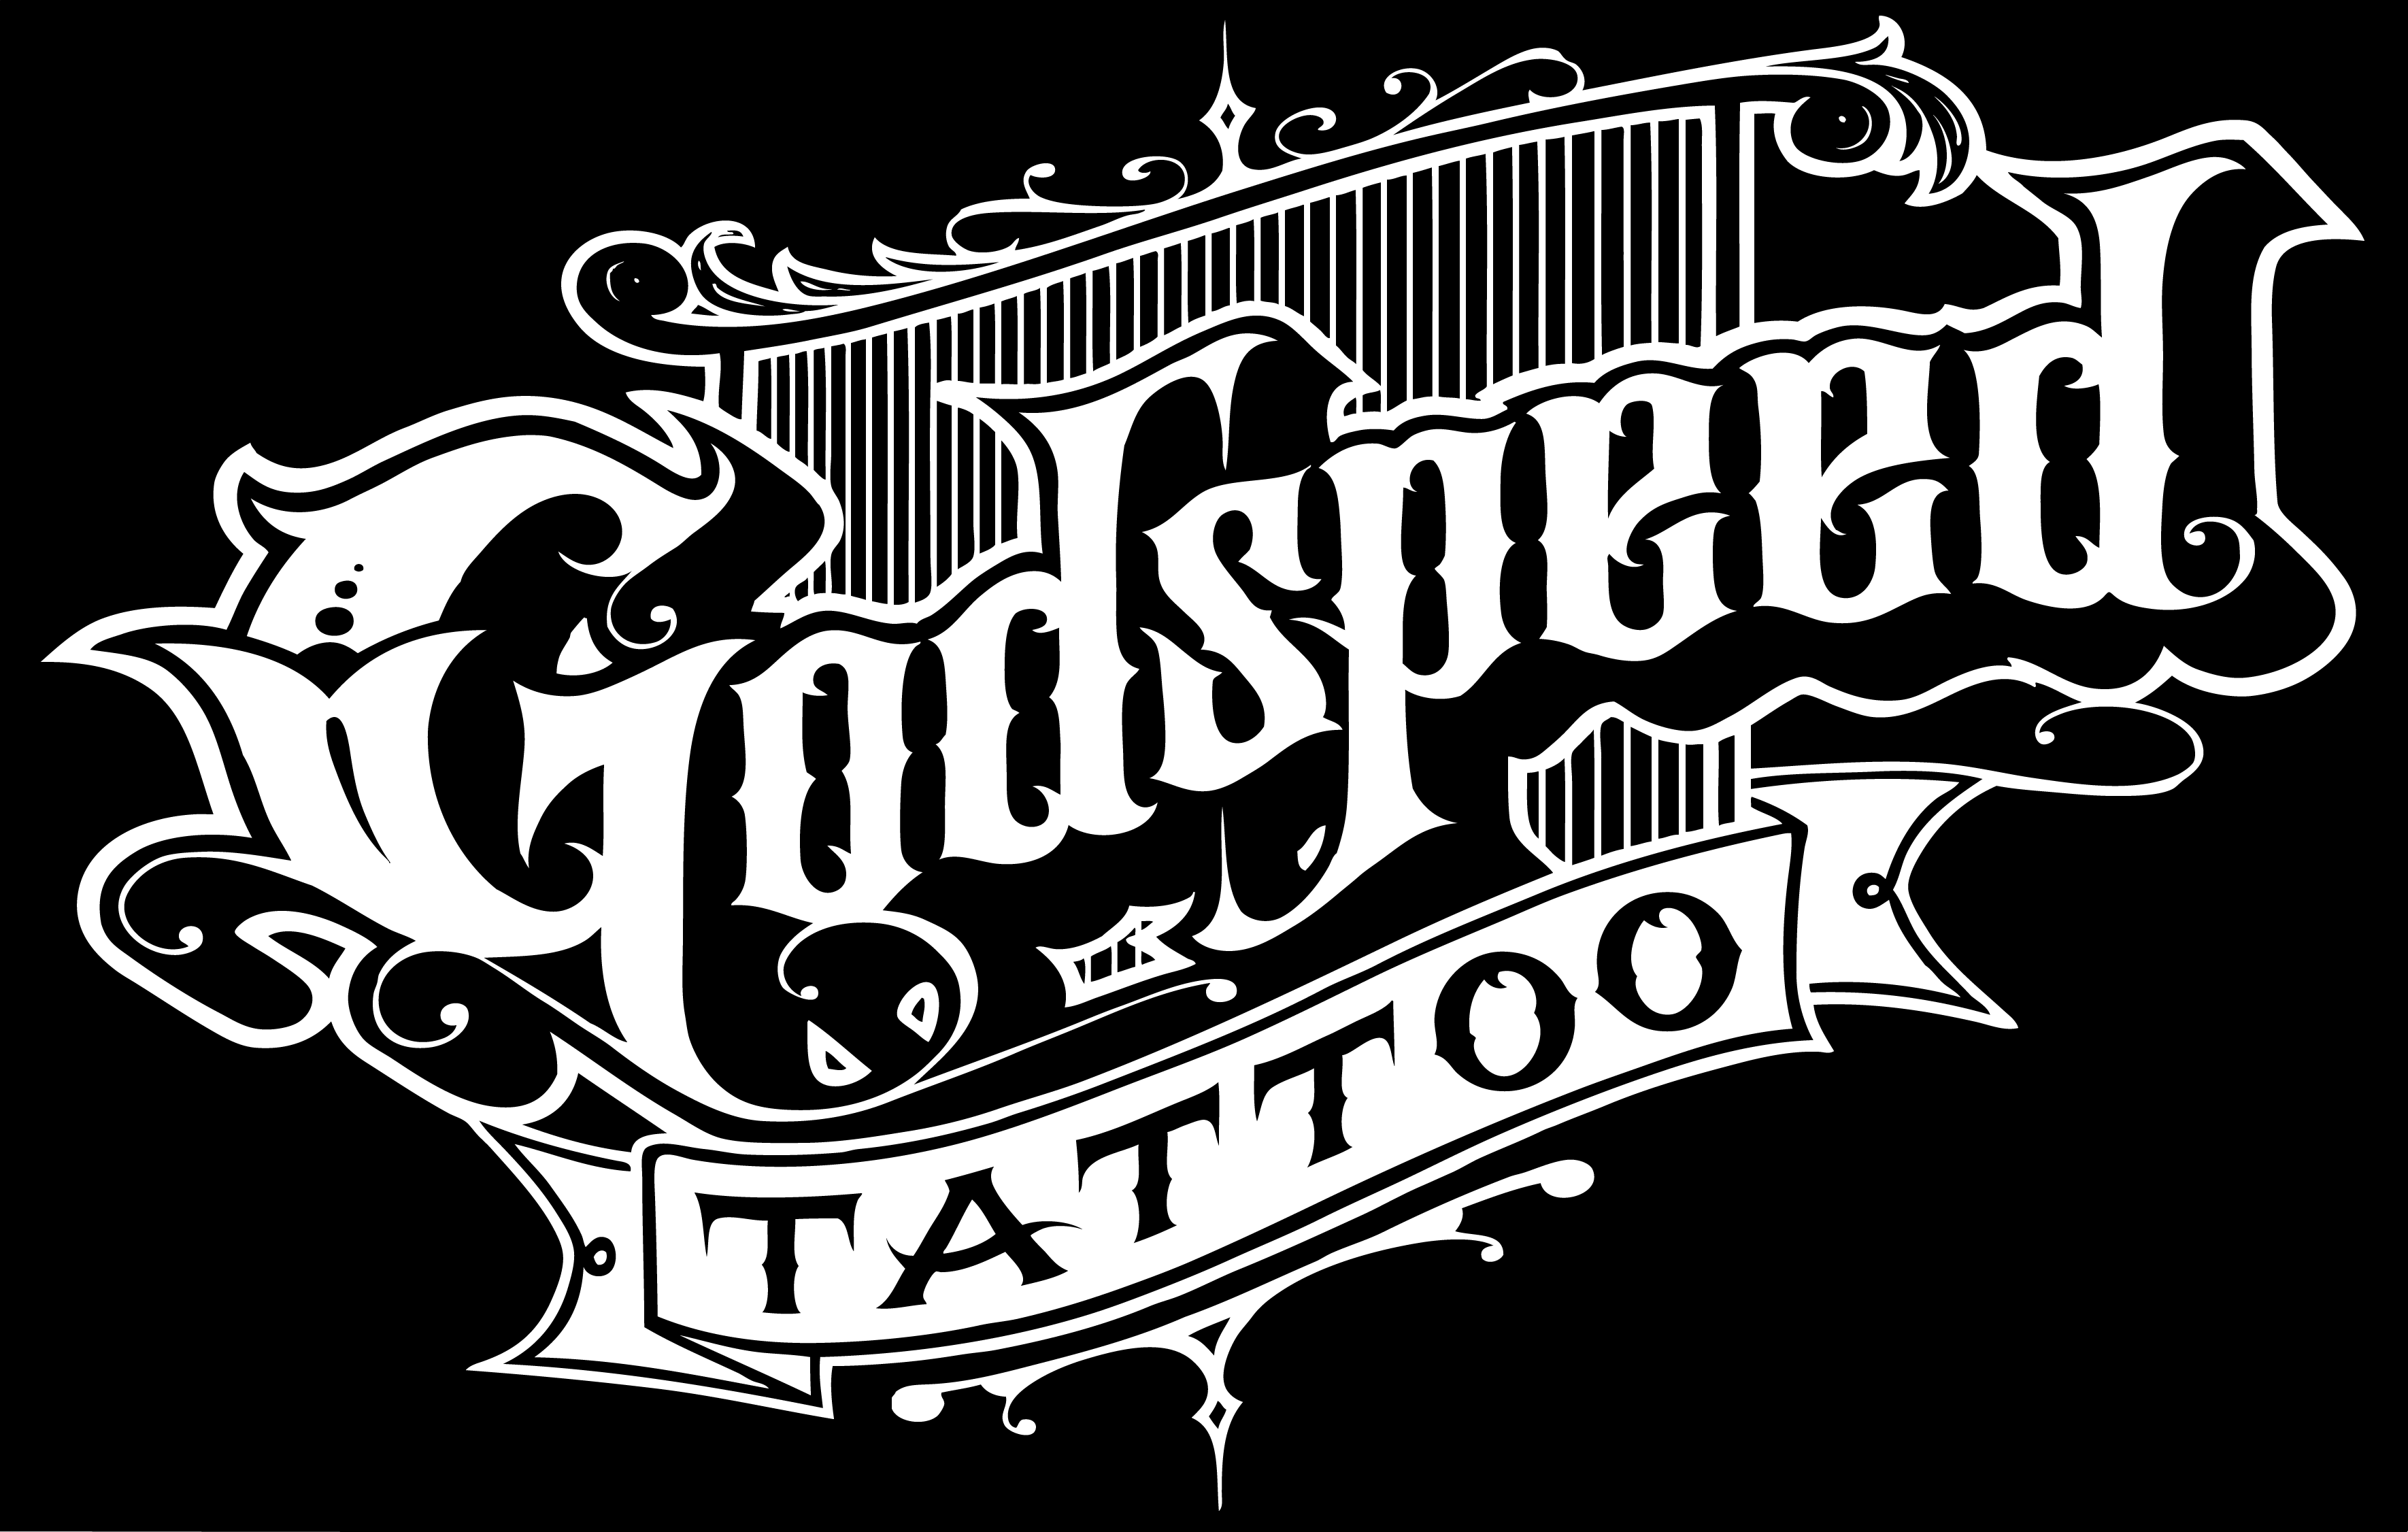 Godspeed tattoo San Mateo